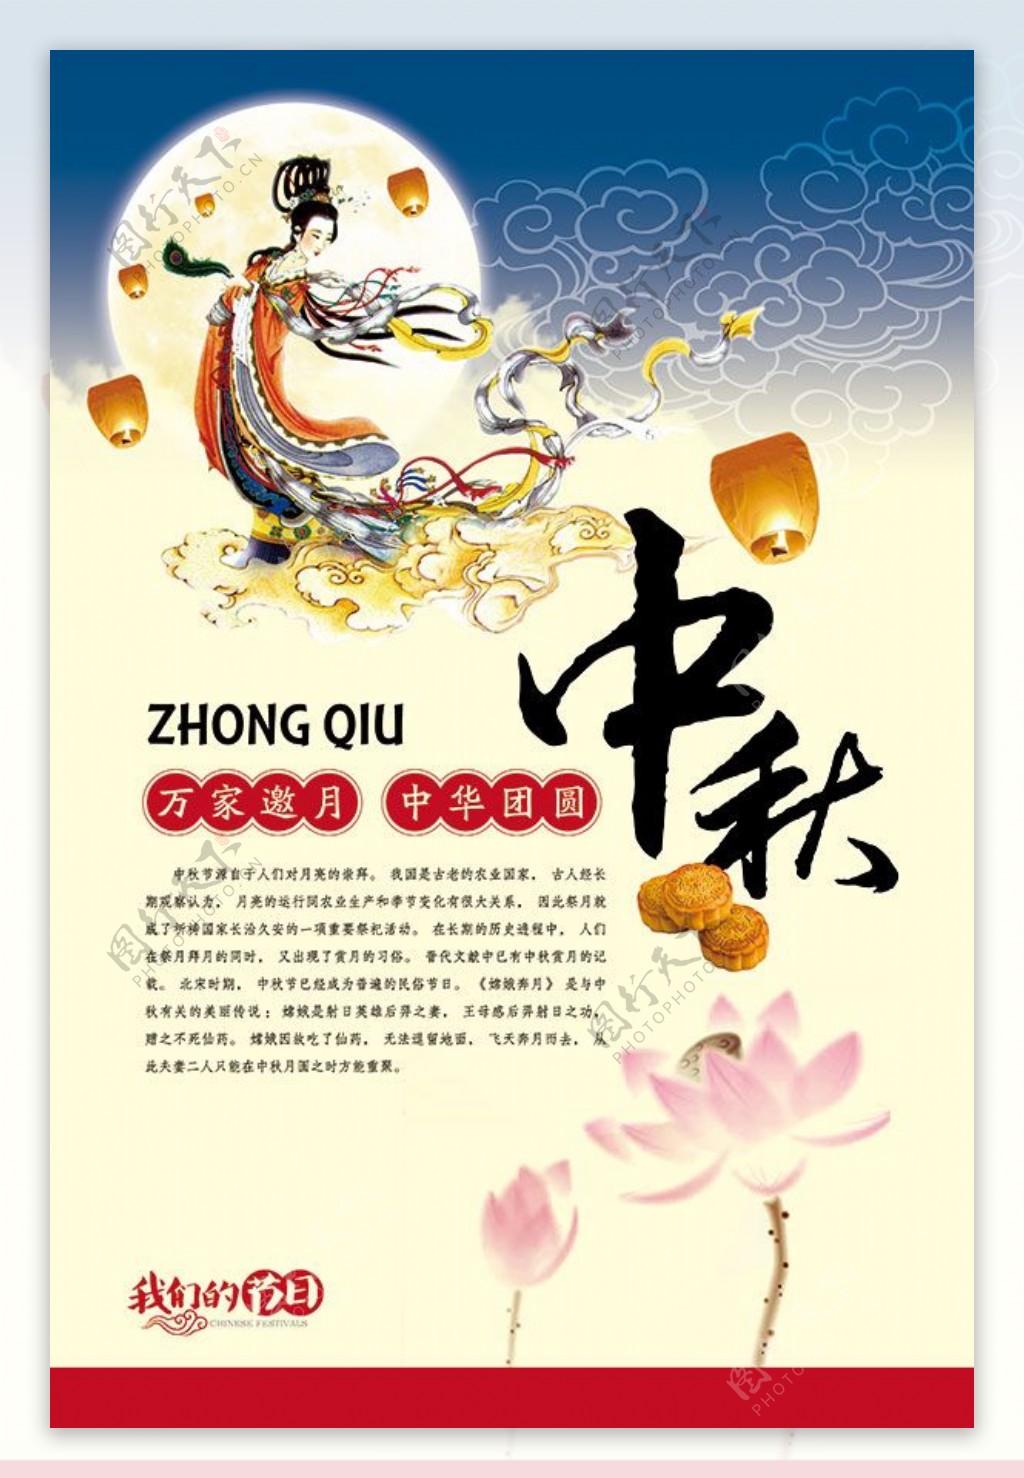 中秋节宣传海报设计模板psd素材下载